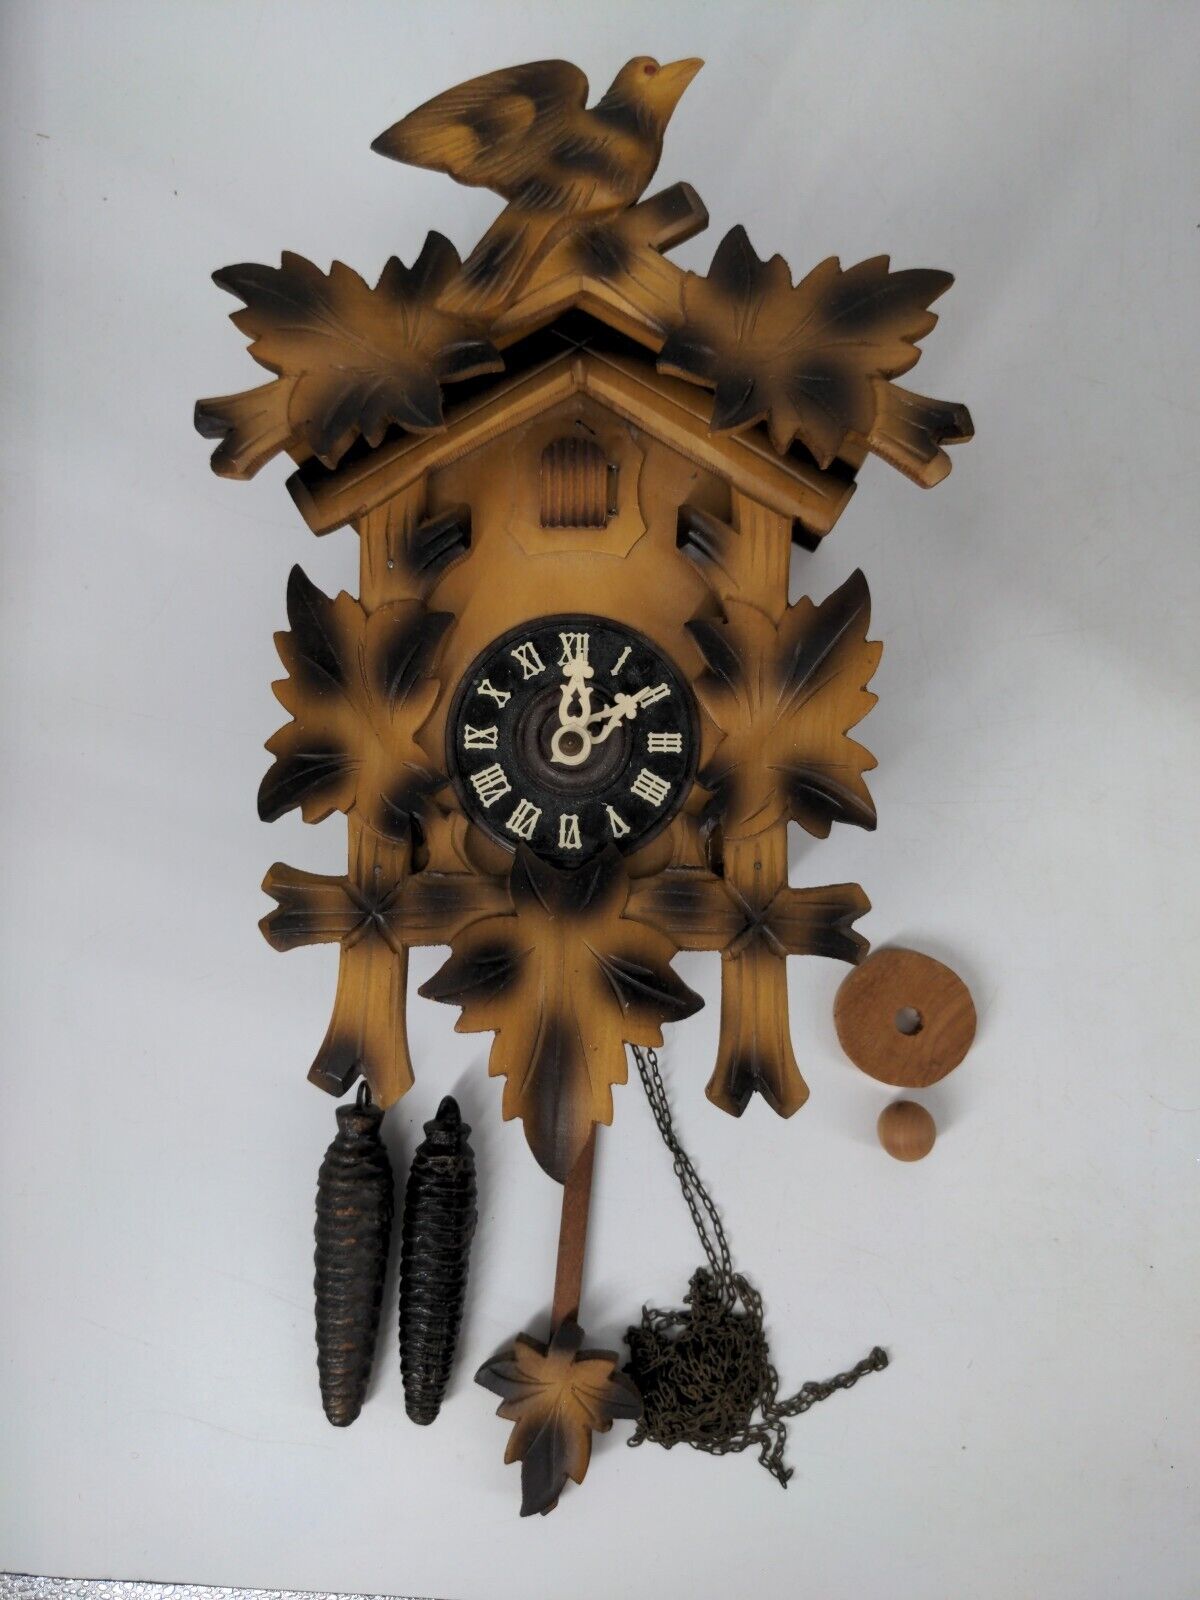 Vintage Black Forest German Austrian Cuckoo Wall Clock AS-IS Repair